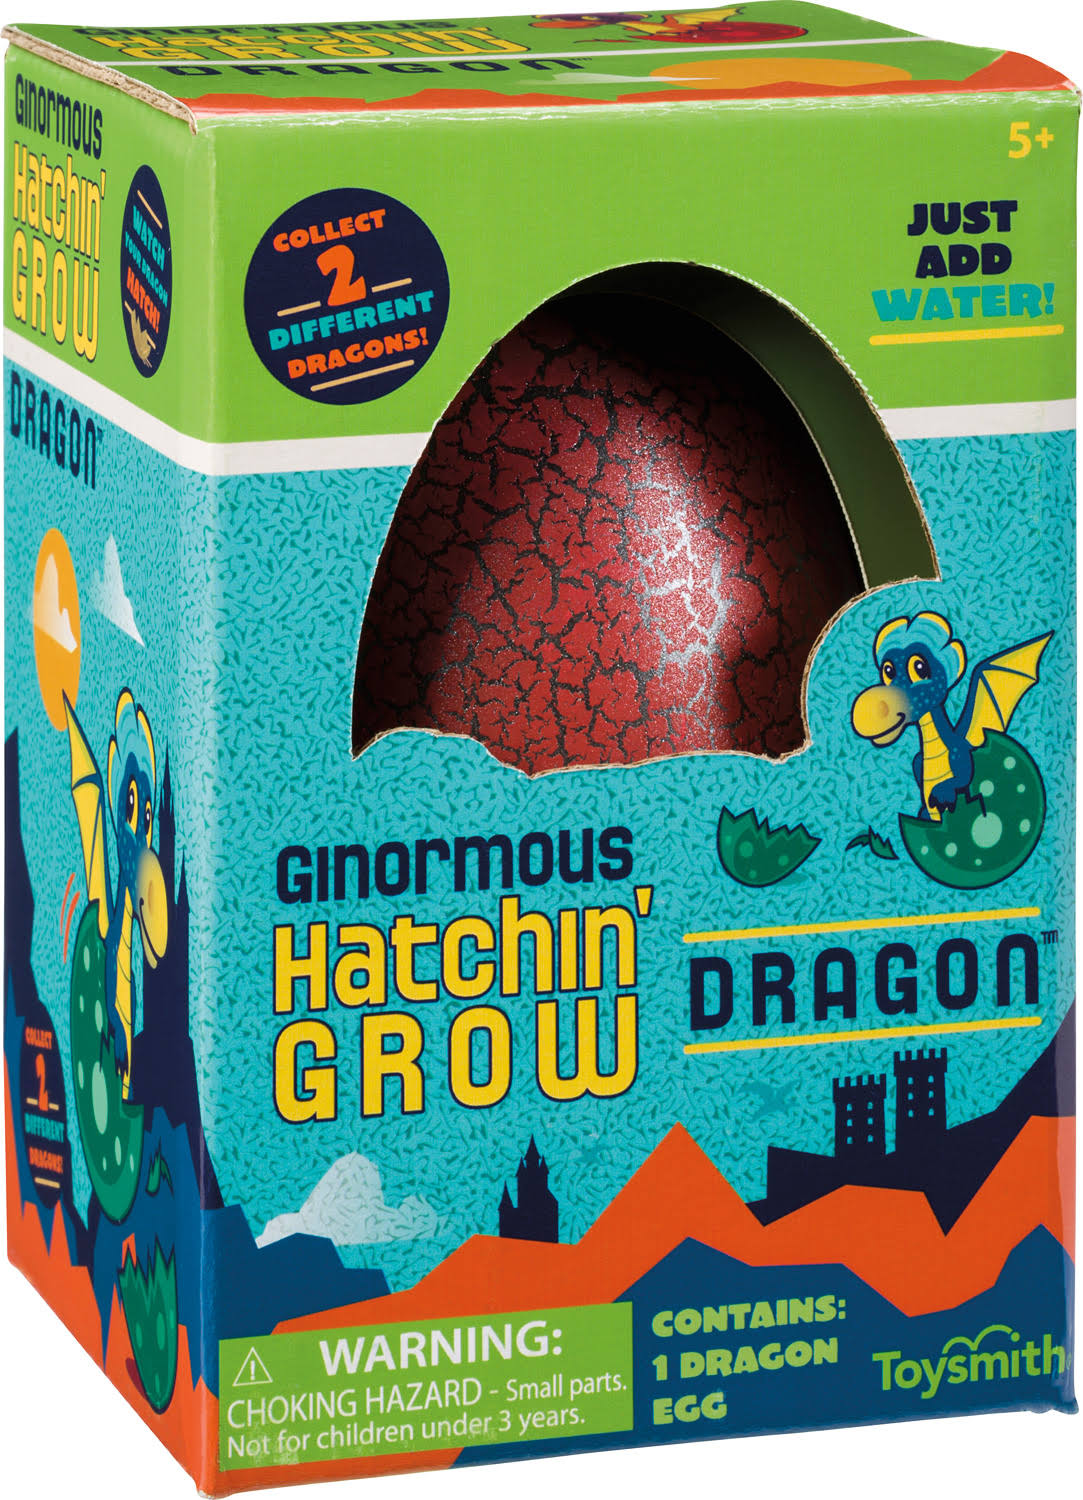 Toysmith Ginormous Hatchin Grow Dragon